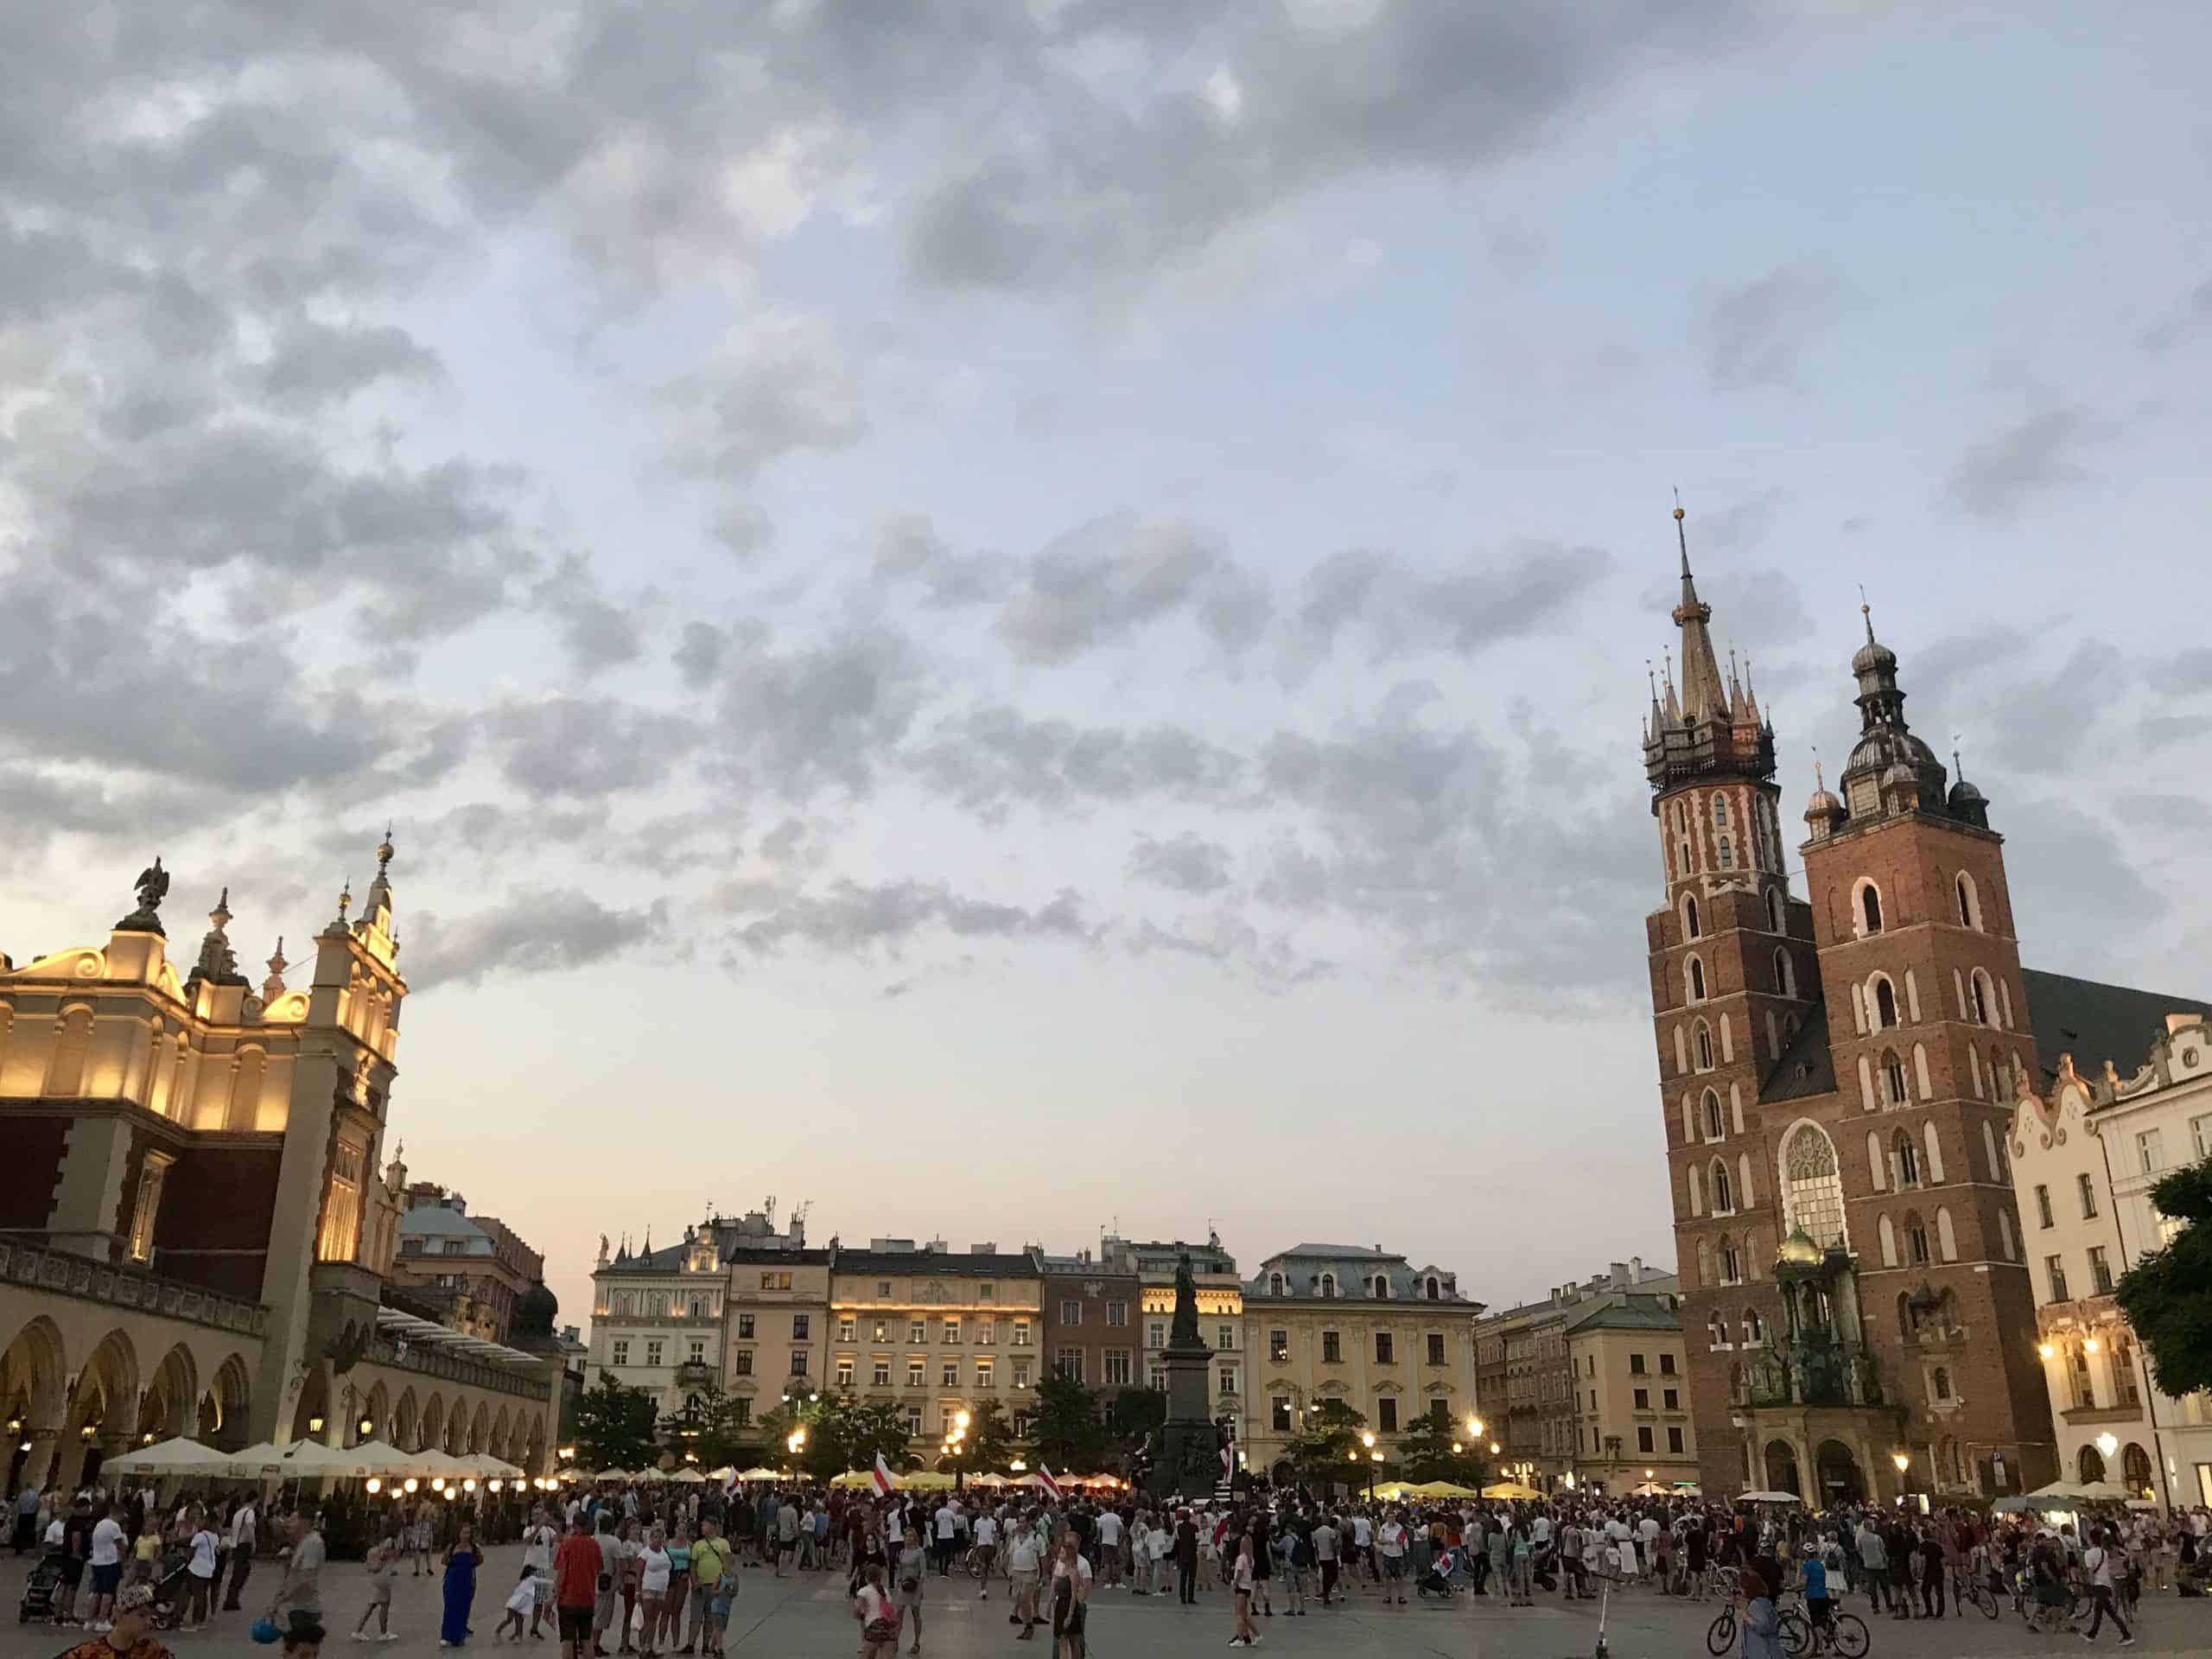 Krakow's Main Market Square - Rynek Główny - is always bustling